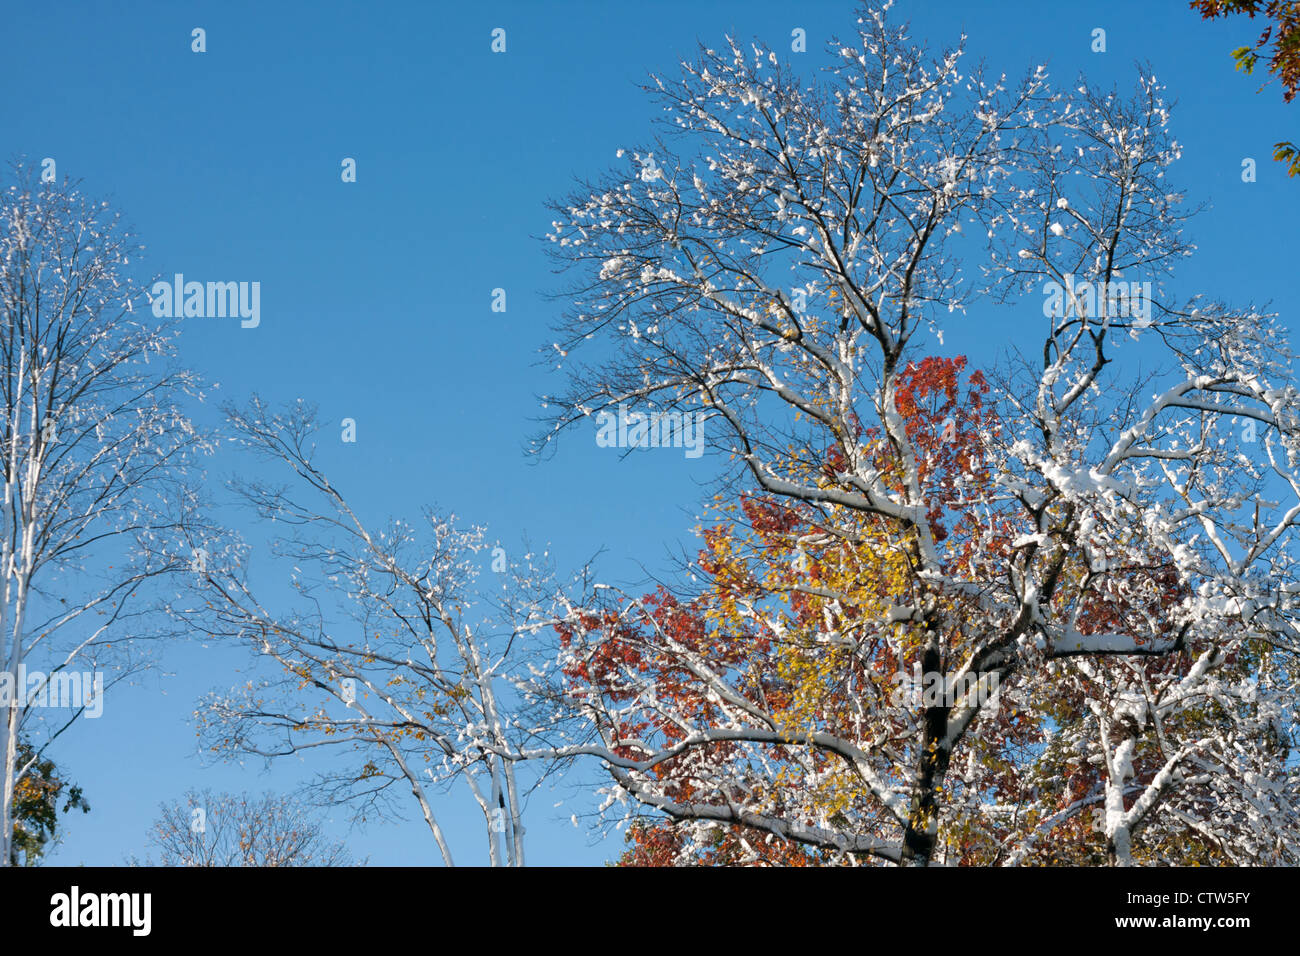 Ein Freak Schneesturm im Oktober Saison Mäntel fallen die bunten Blätter mit Schnee und Eis. Stockfoto